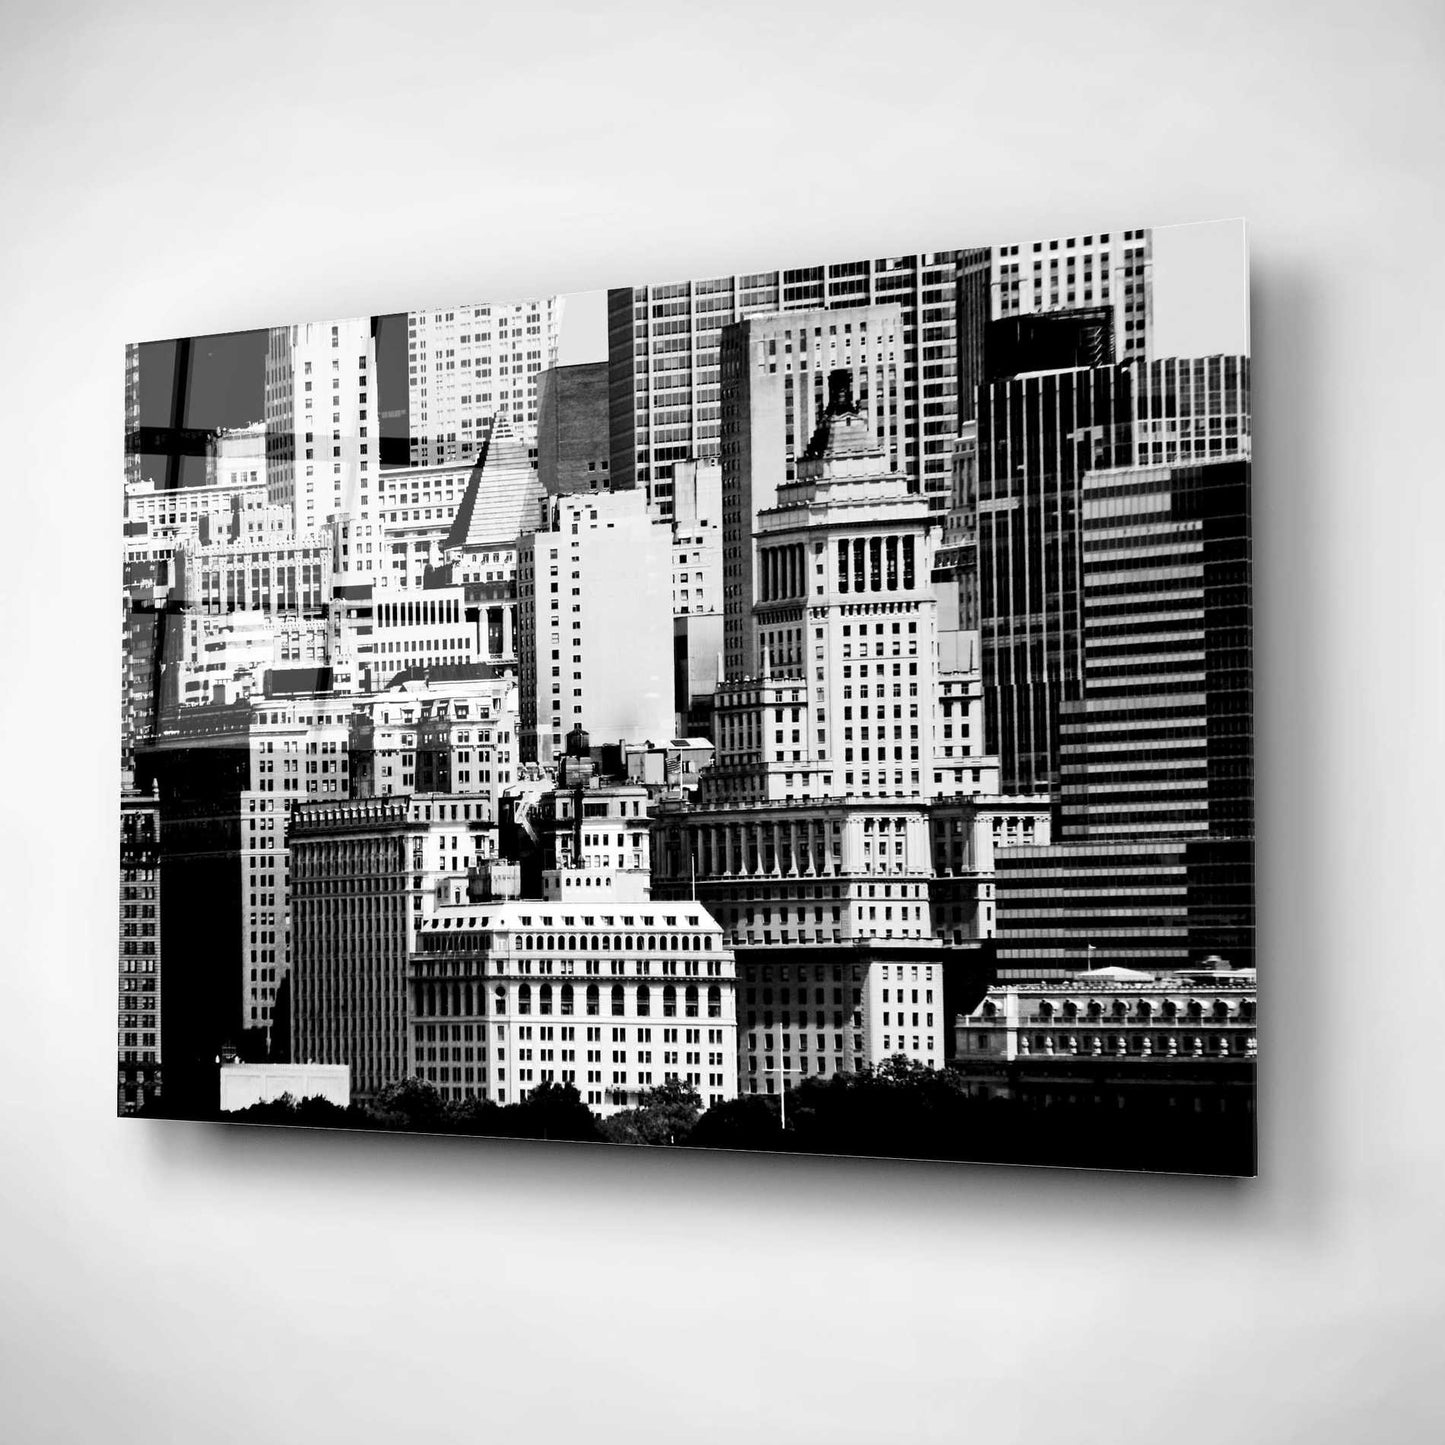 Epic Art 'NYC Skyline IX' by Jeff Pica, Acrylic Glass Wall Art,16x12